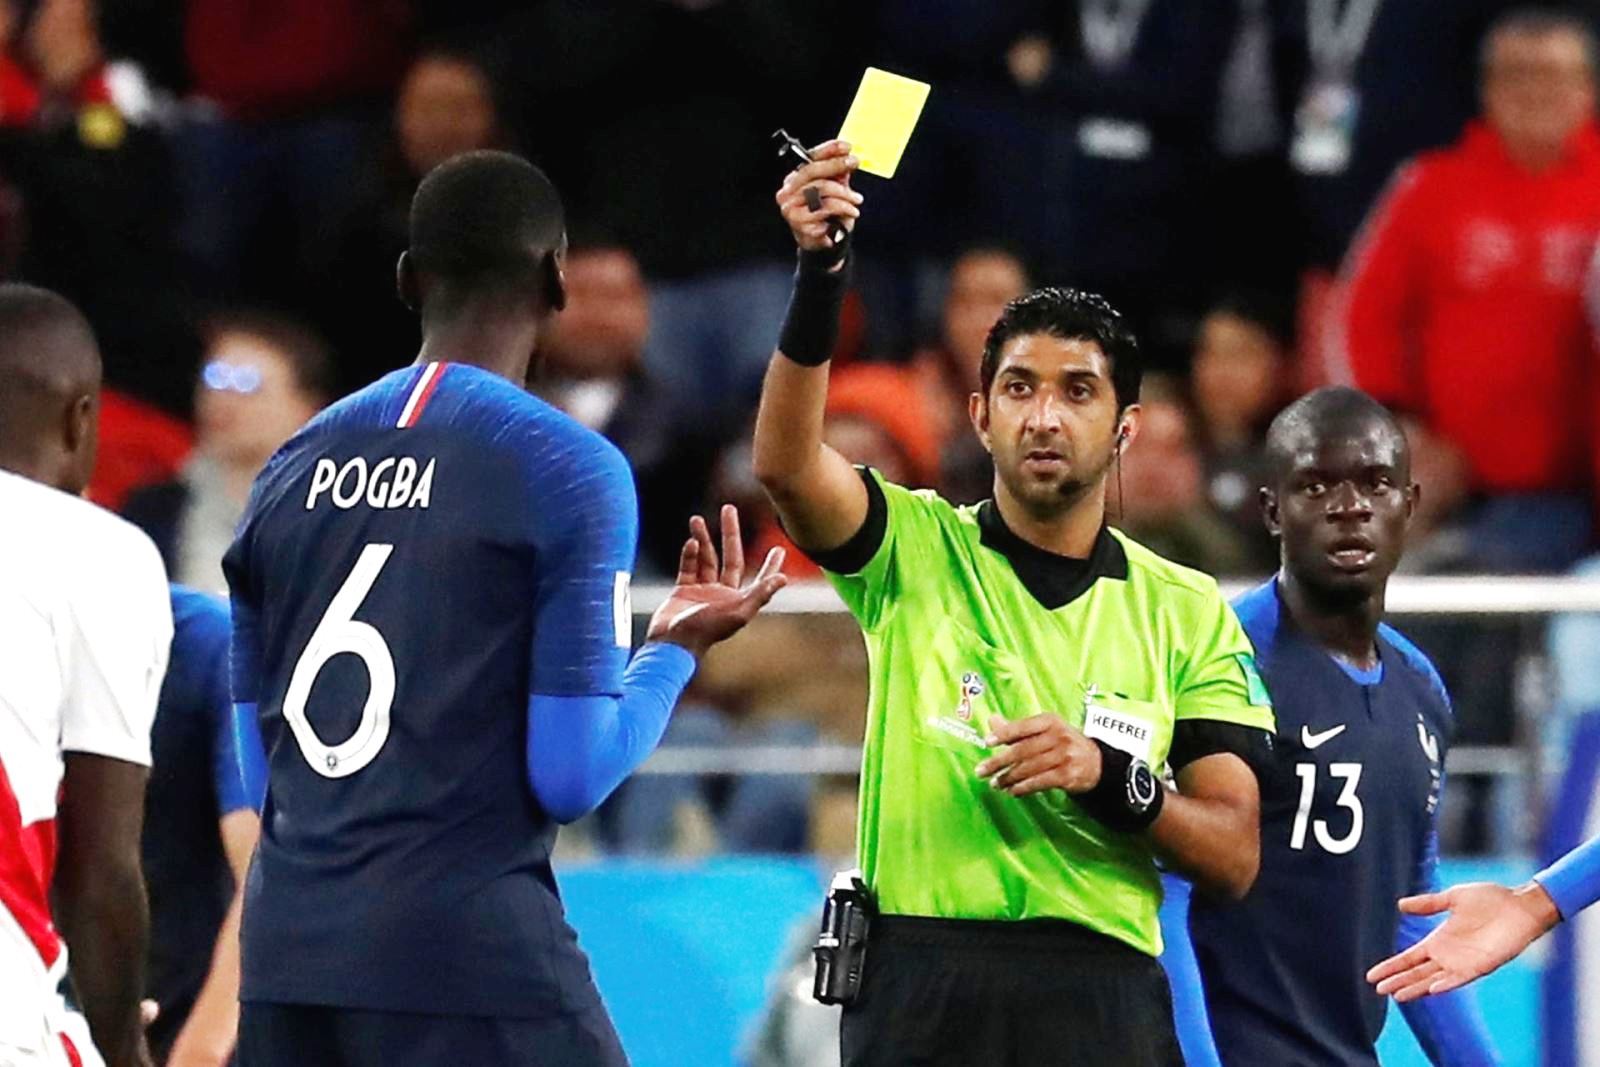 Trọng tài Mohamed Abdullah Hassan rút thẻ cảnh cáo Pogba trong một trận đấu của đội tuyển Pháp. Ảnh: The National.